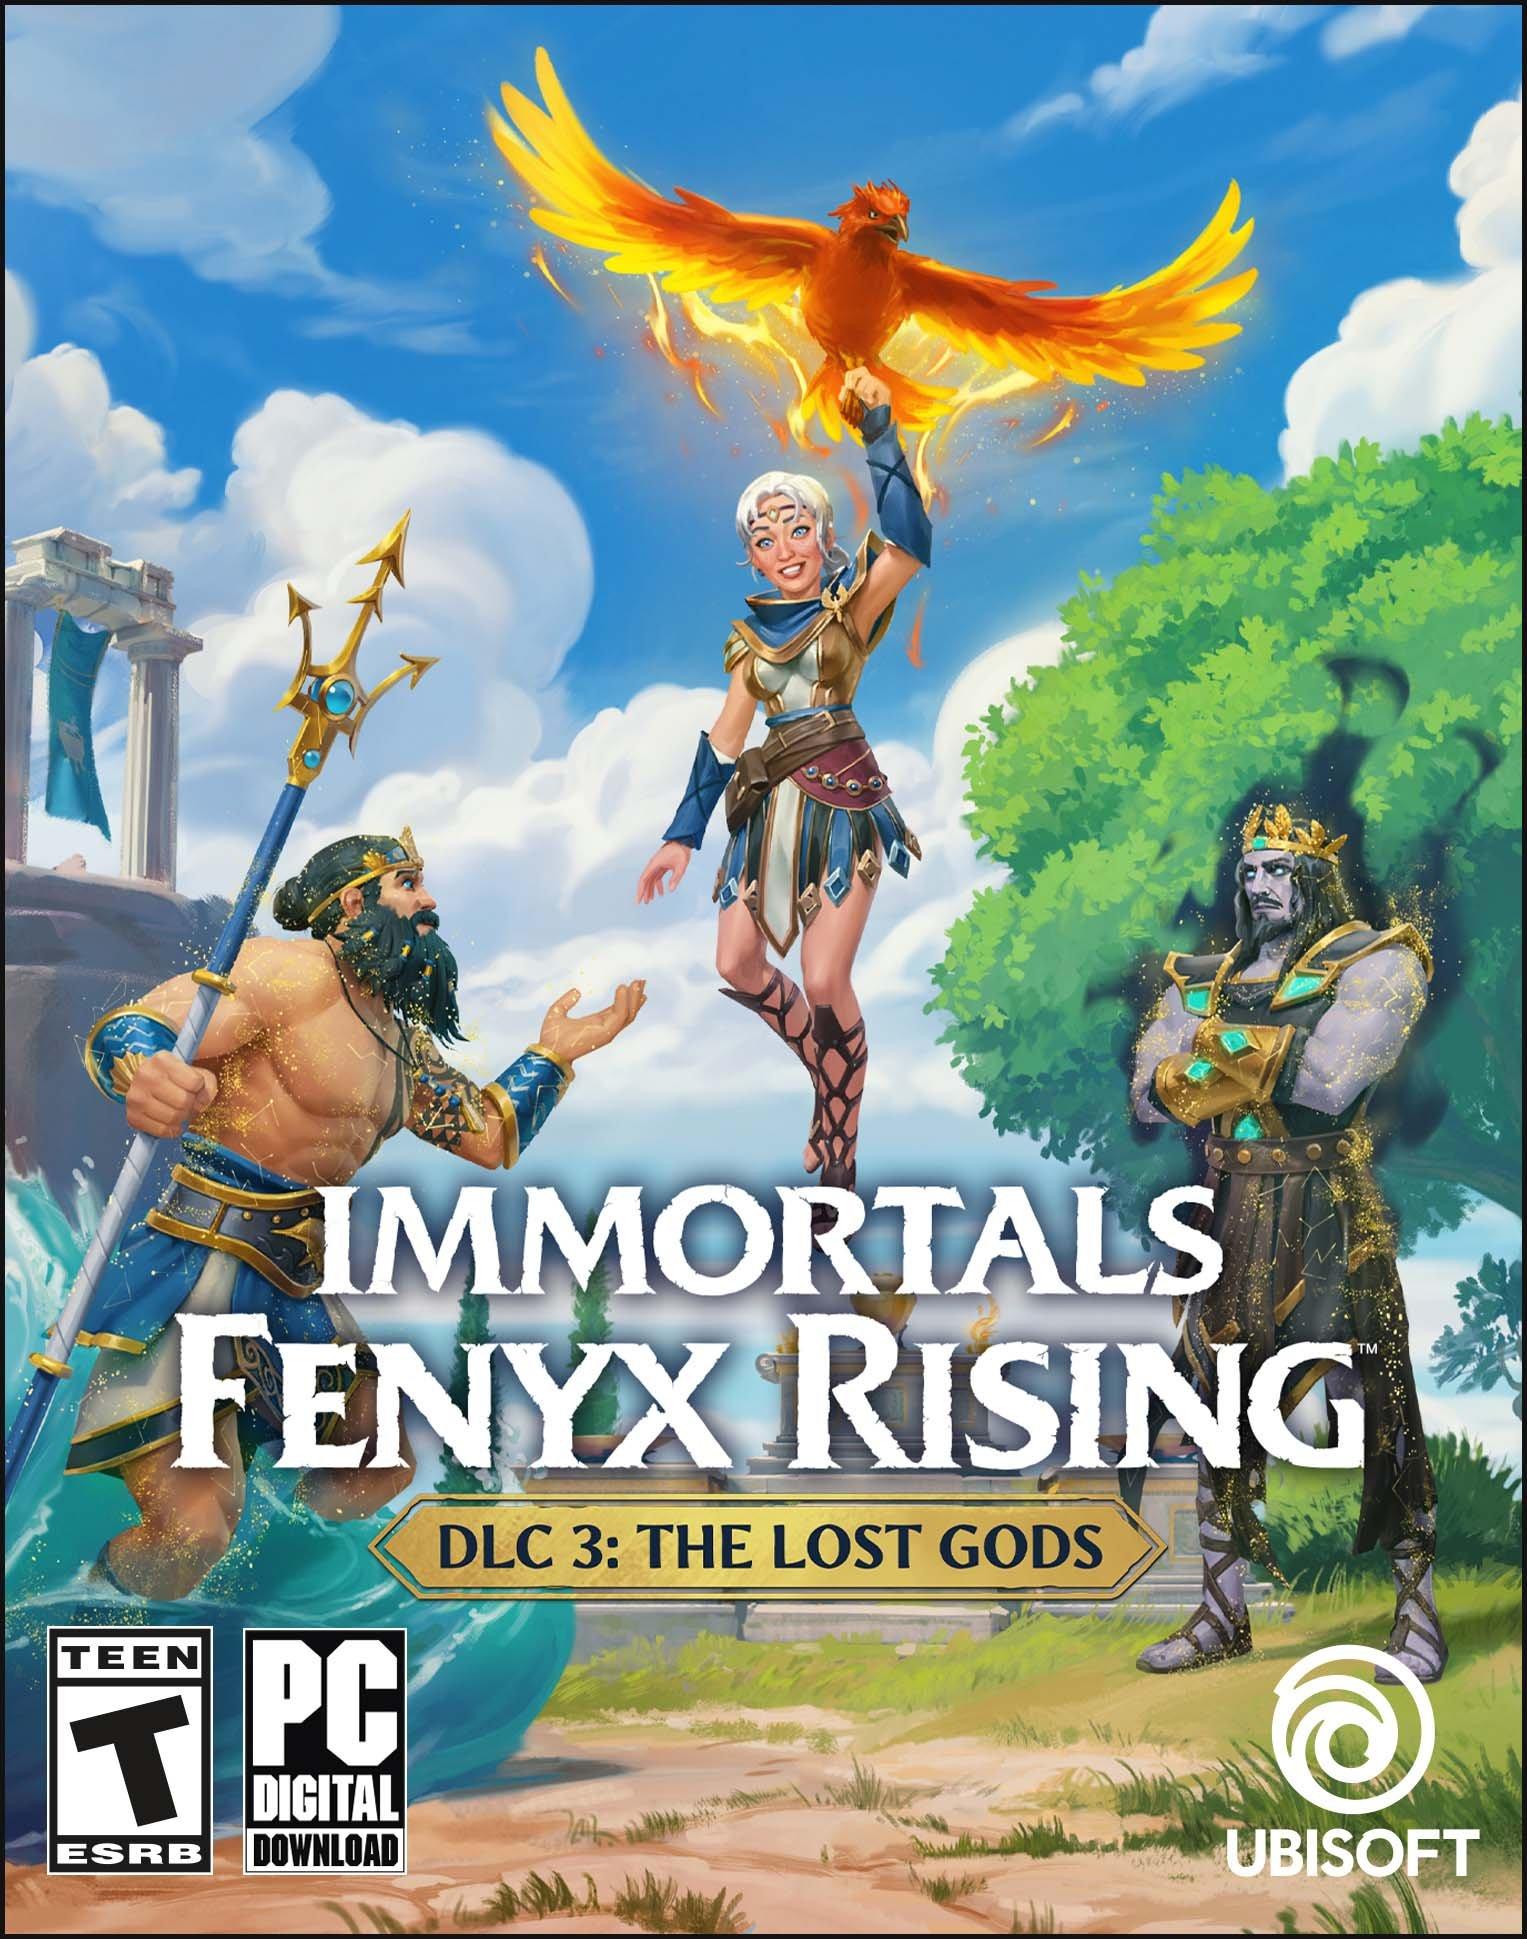 Immortals Fenyx Rising: The Lost Gods DLC